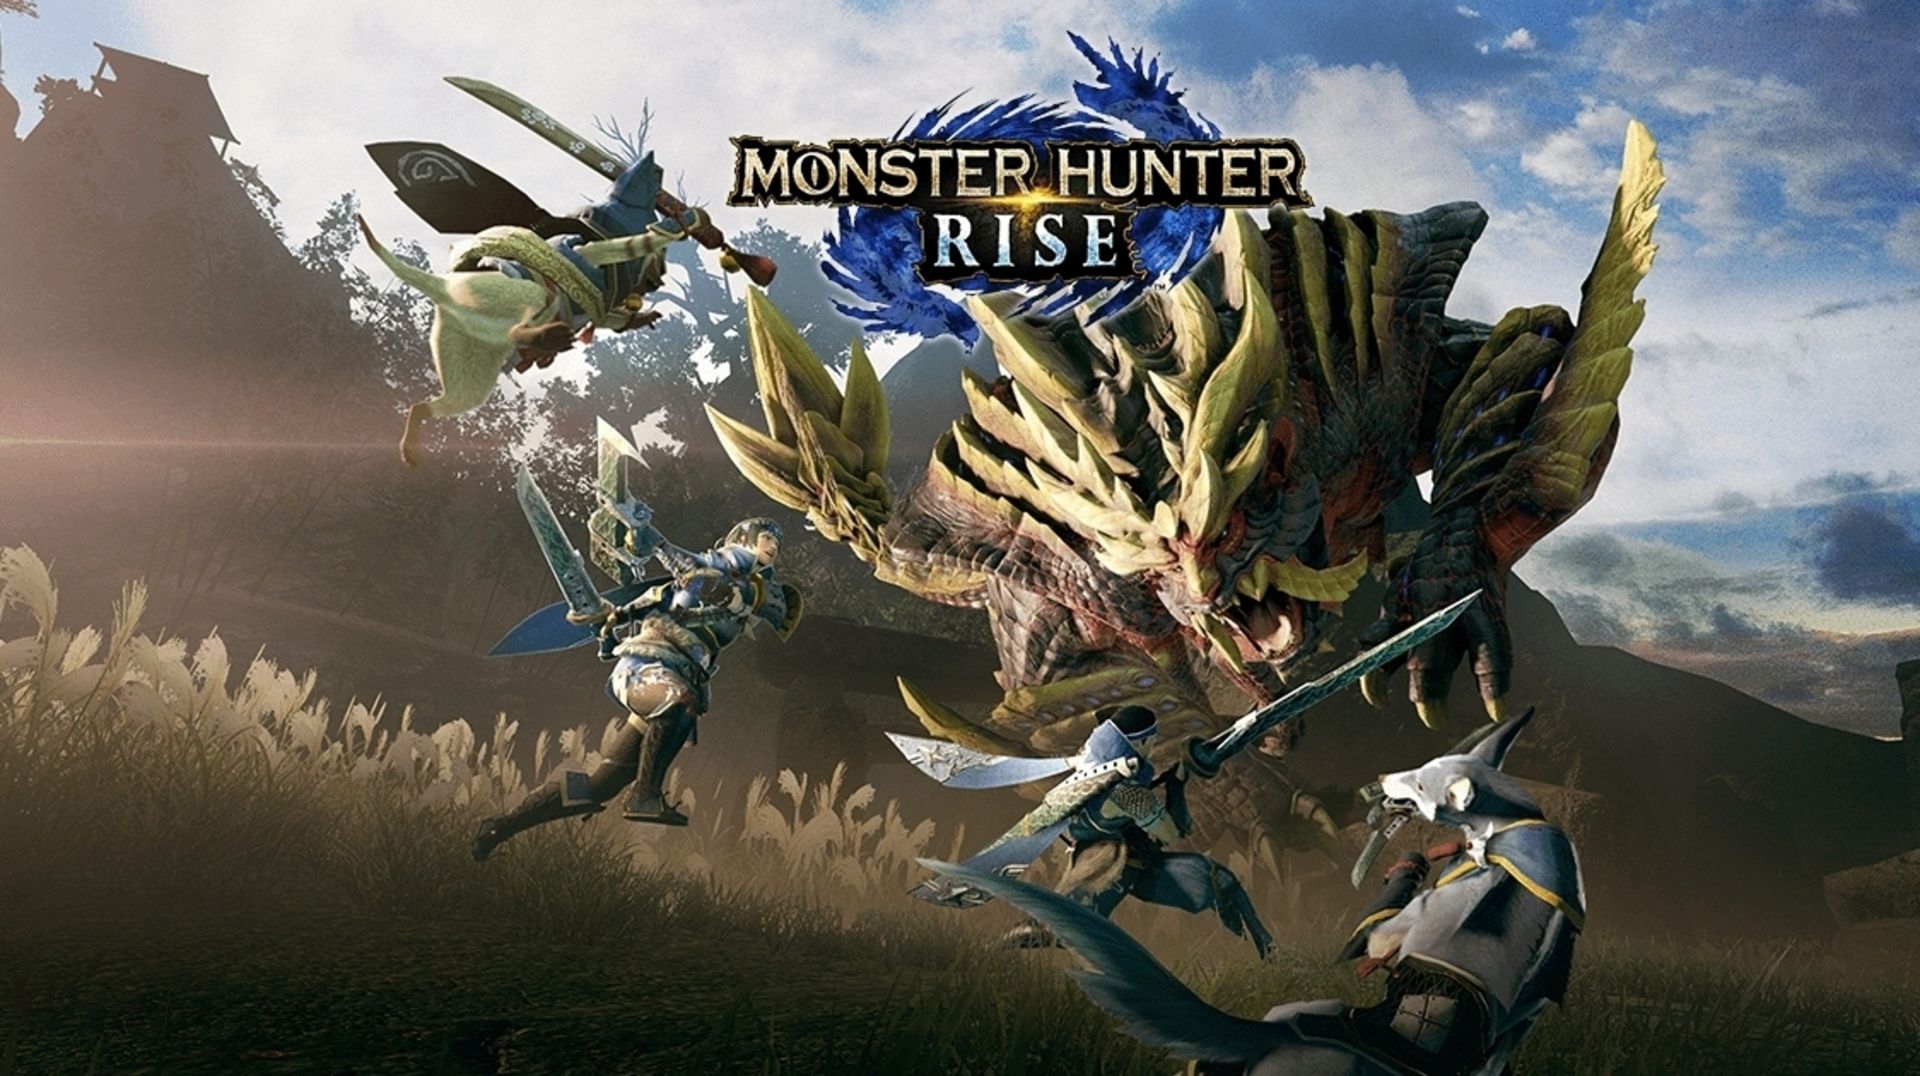 Monster Hunter Rise oyununa başlamadan önce bilmeniz gereken 10 şey |  Technotoday - Teknoloji Haberleri